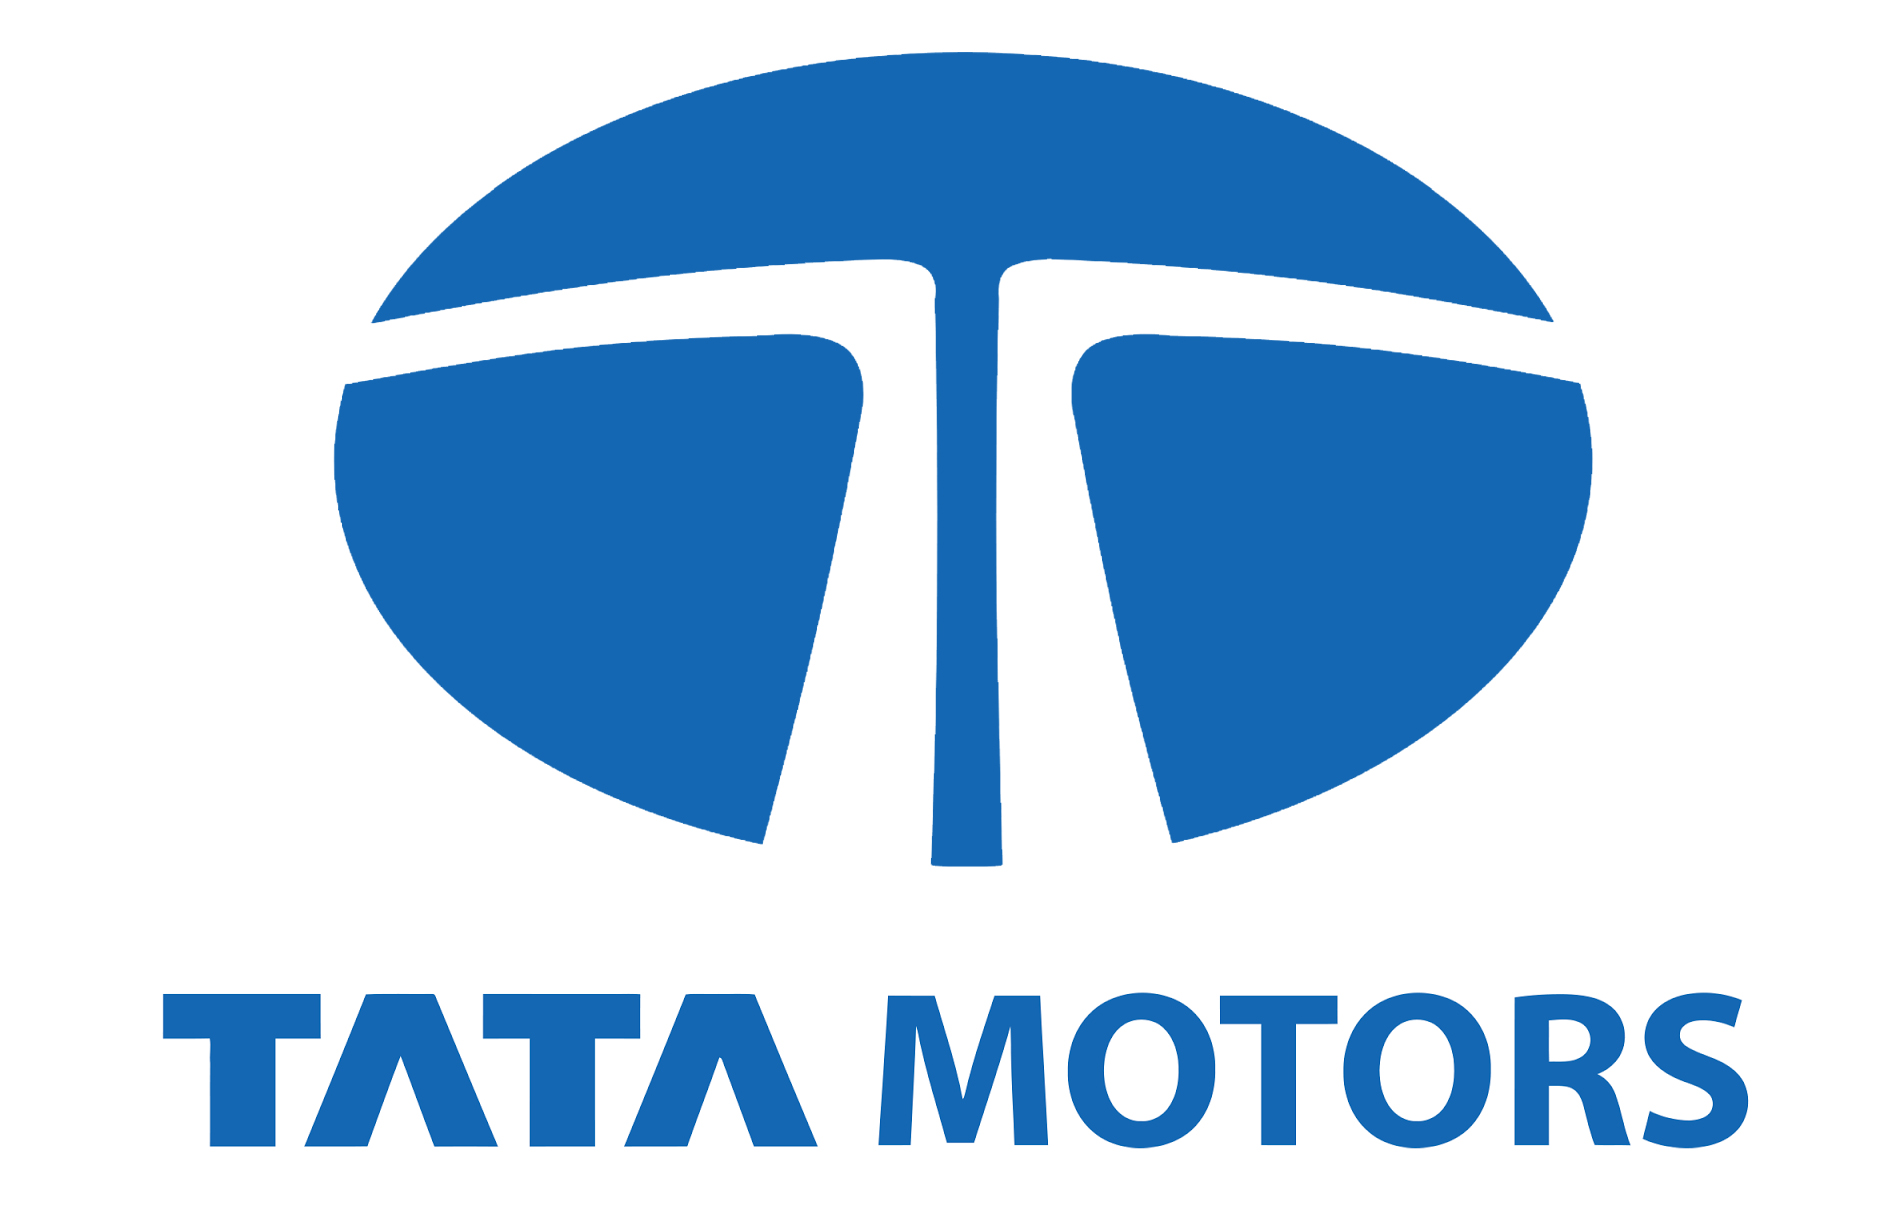 Tata Motors Cars Showroom - Sai Motors|Show Room|Automotive